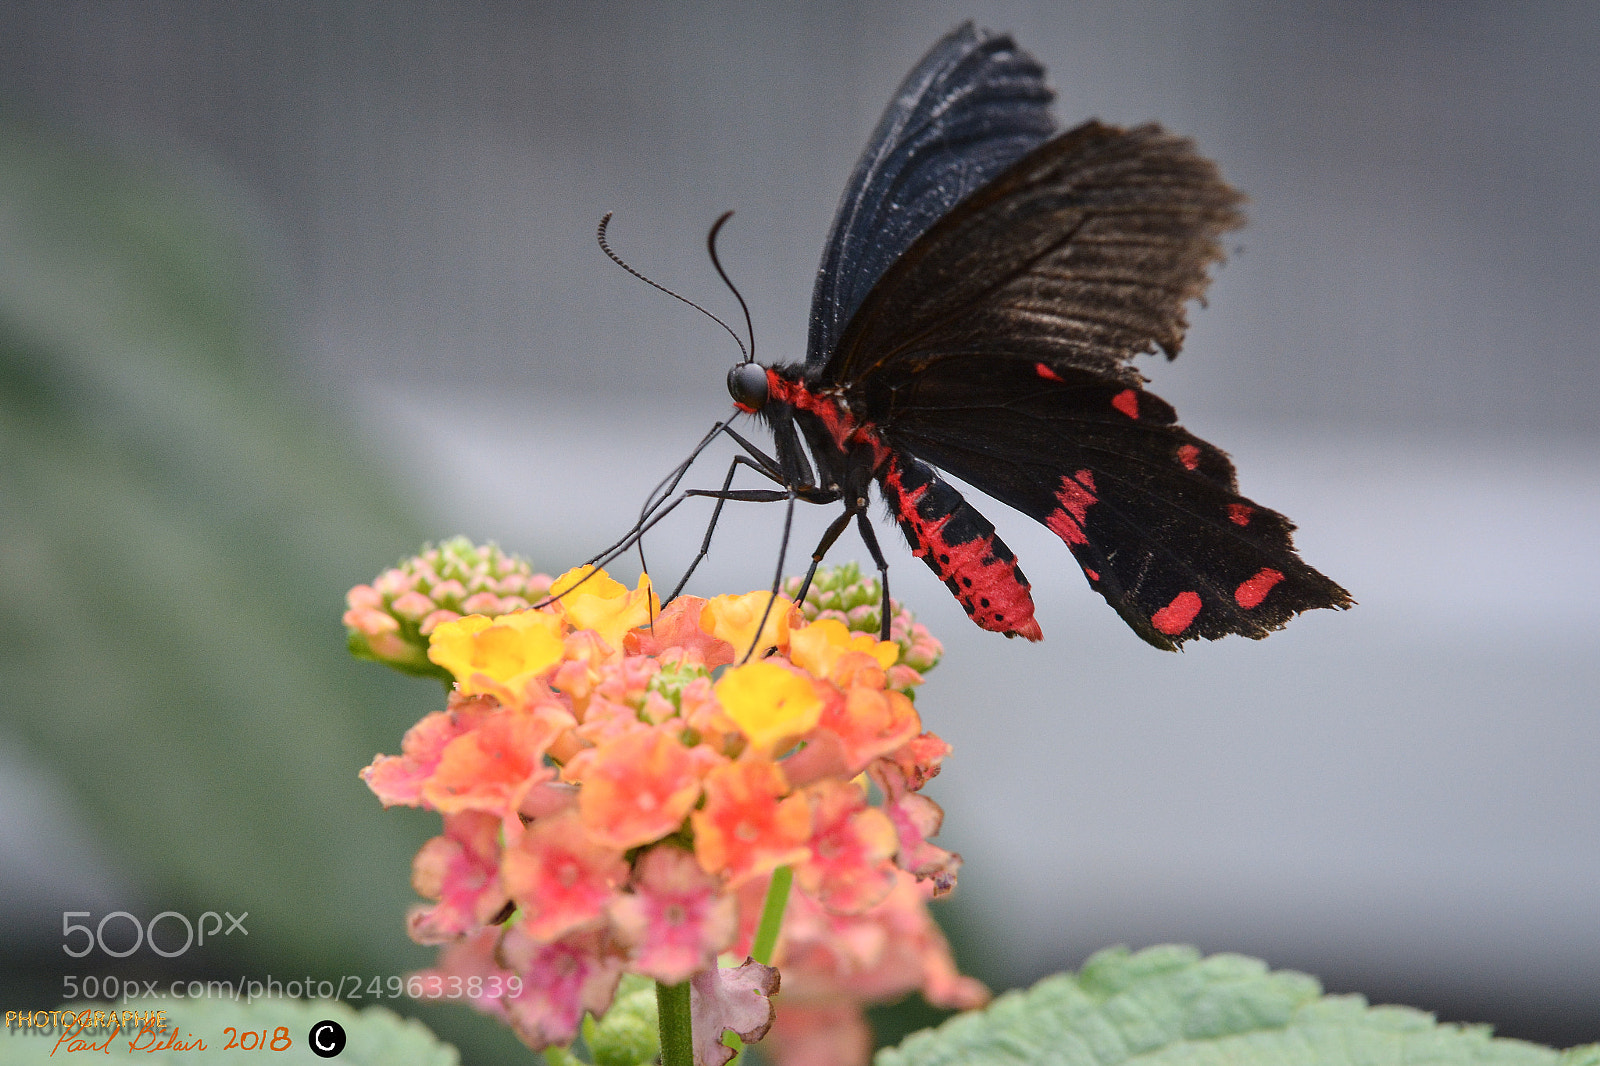 Nikon D7100 sample photo. Papillons en libert photography